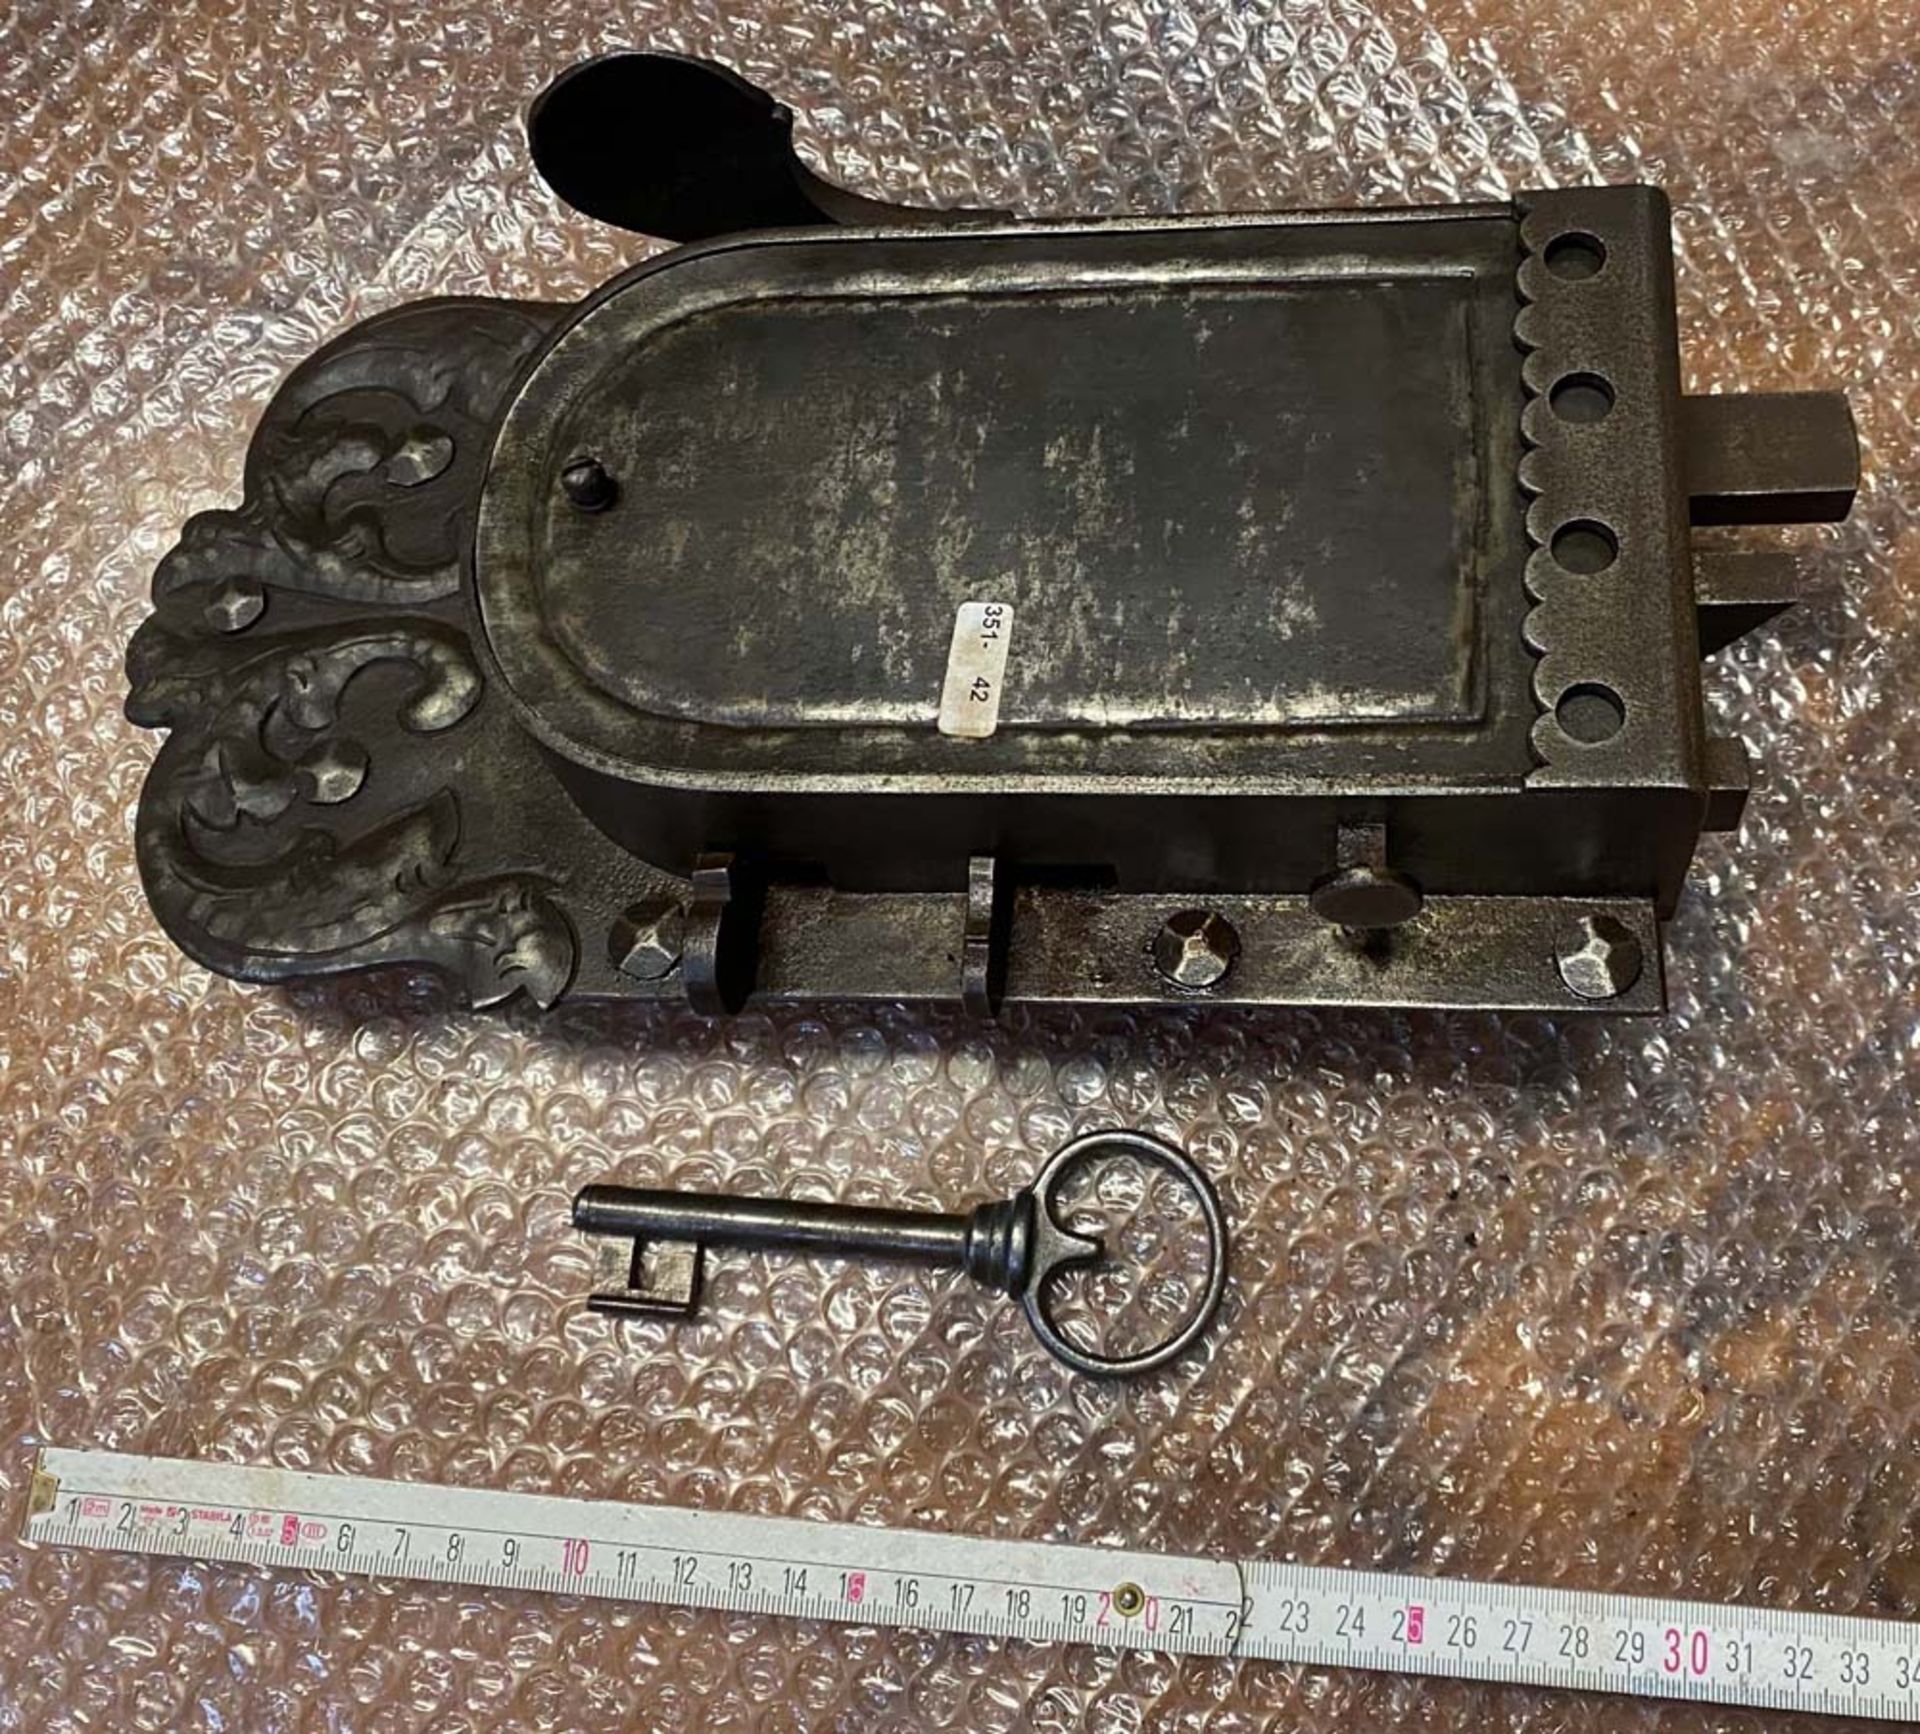 Prächtiges Kastenschloss mit passendem Schlüssel sowie Mehrfachverriegelung. Dornmaß: 11,5 cm. (